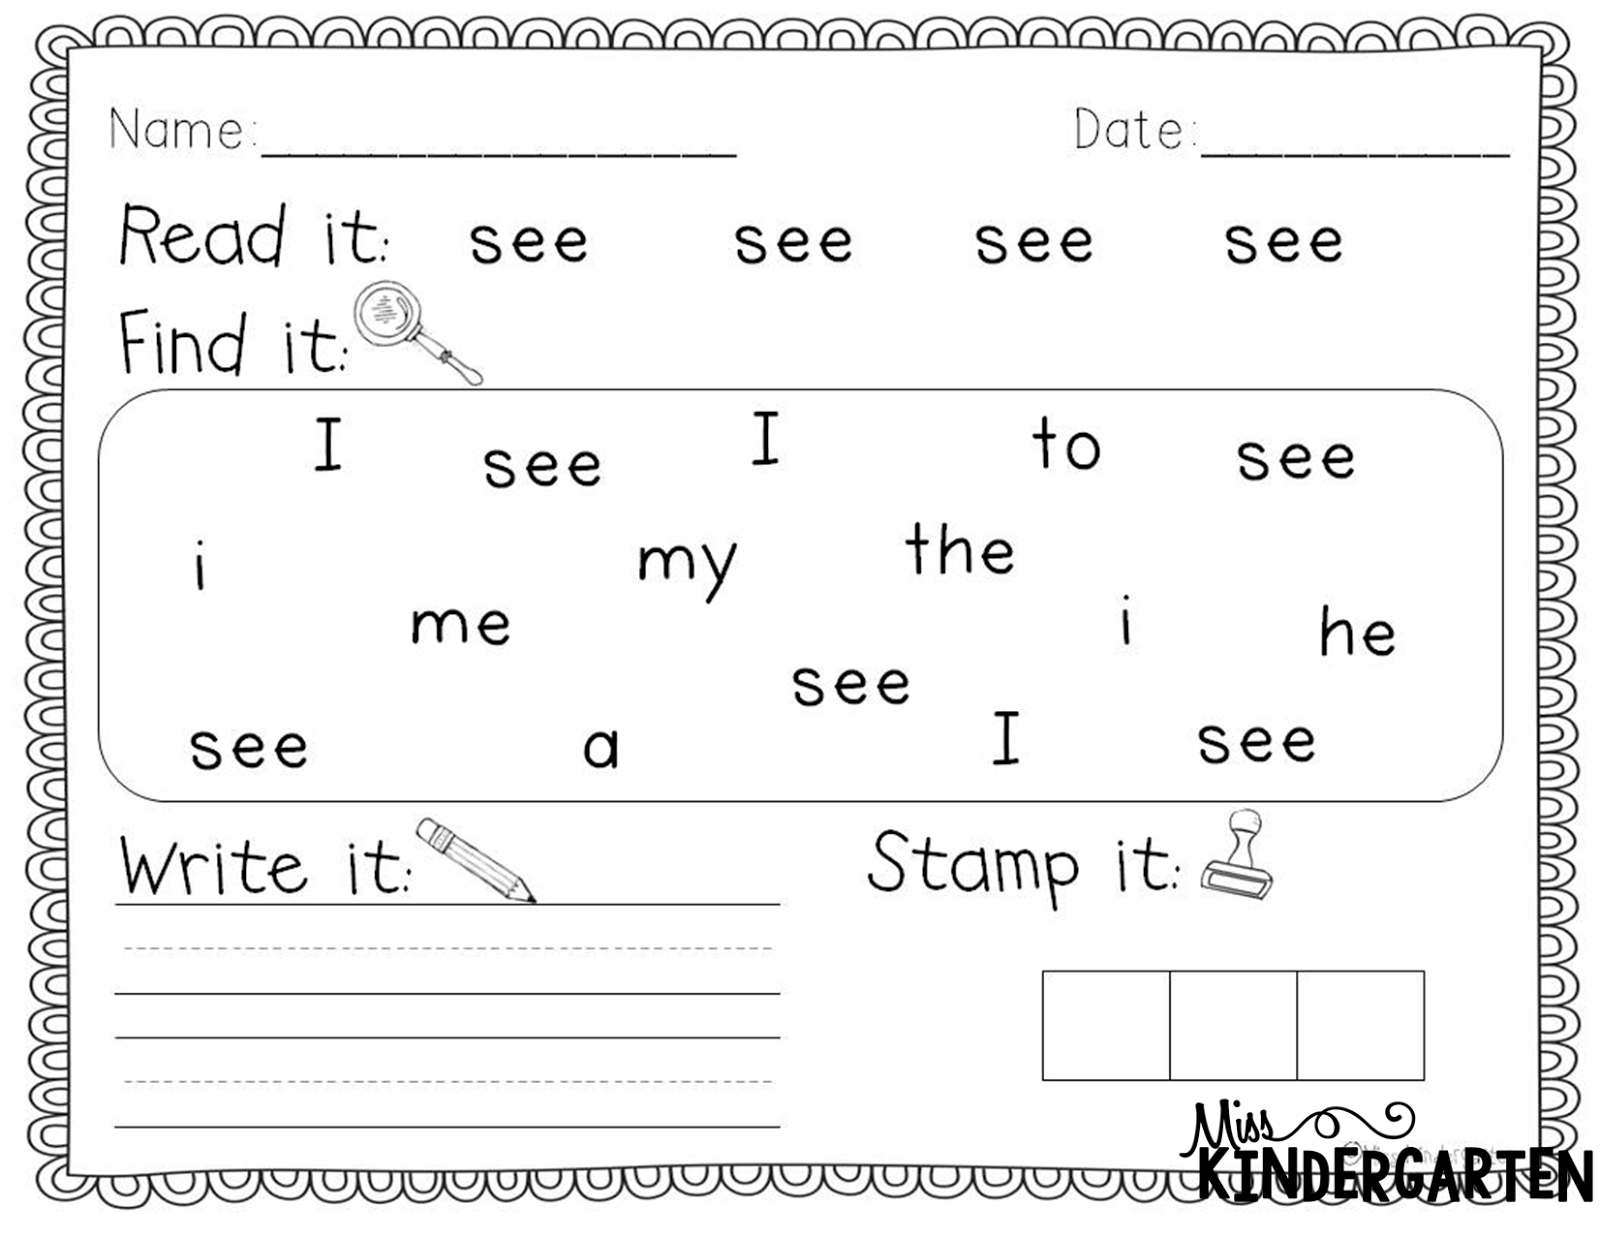 Kindergarten Sight Word Practice Worksheets